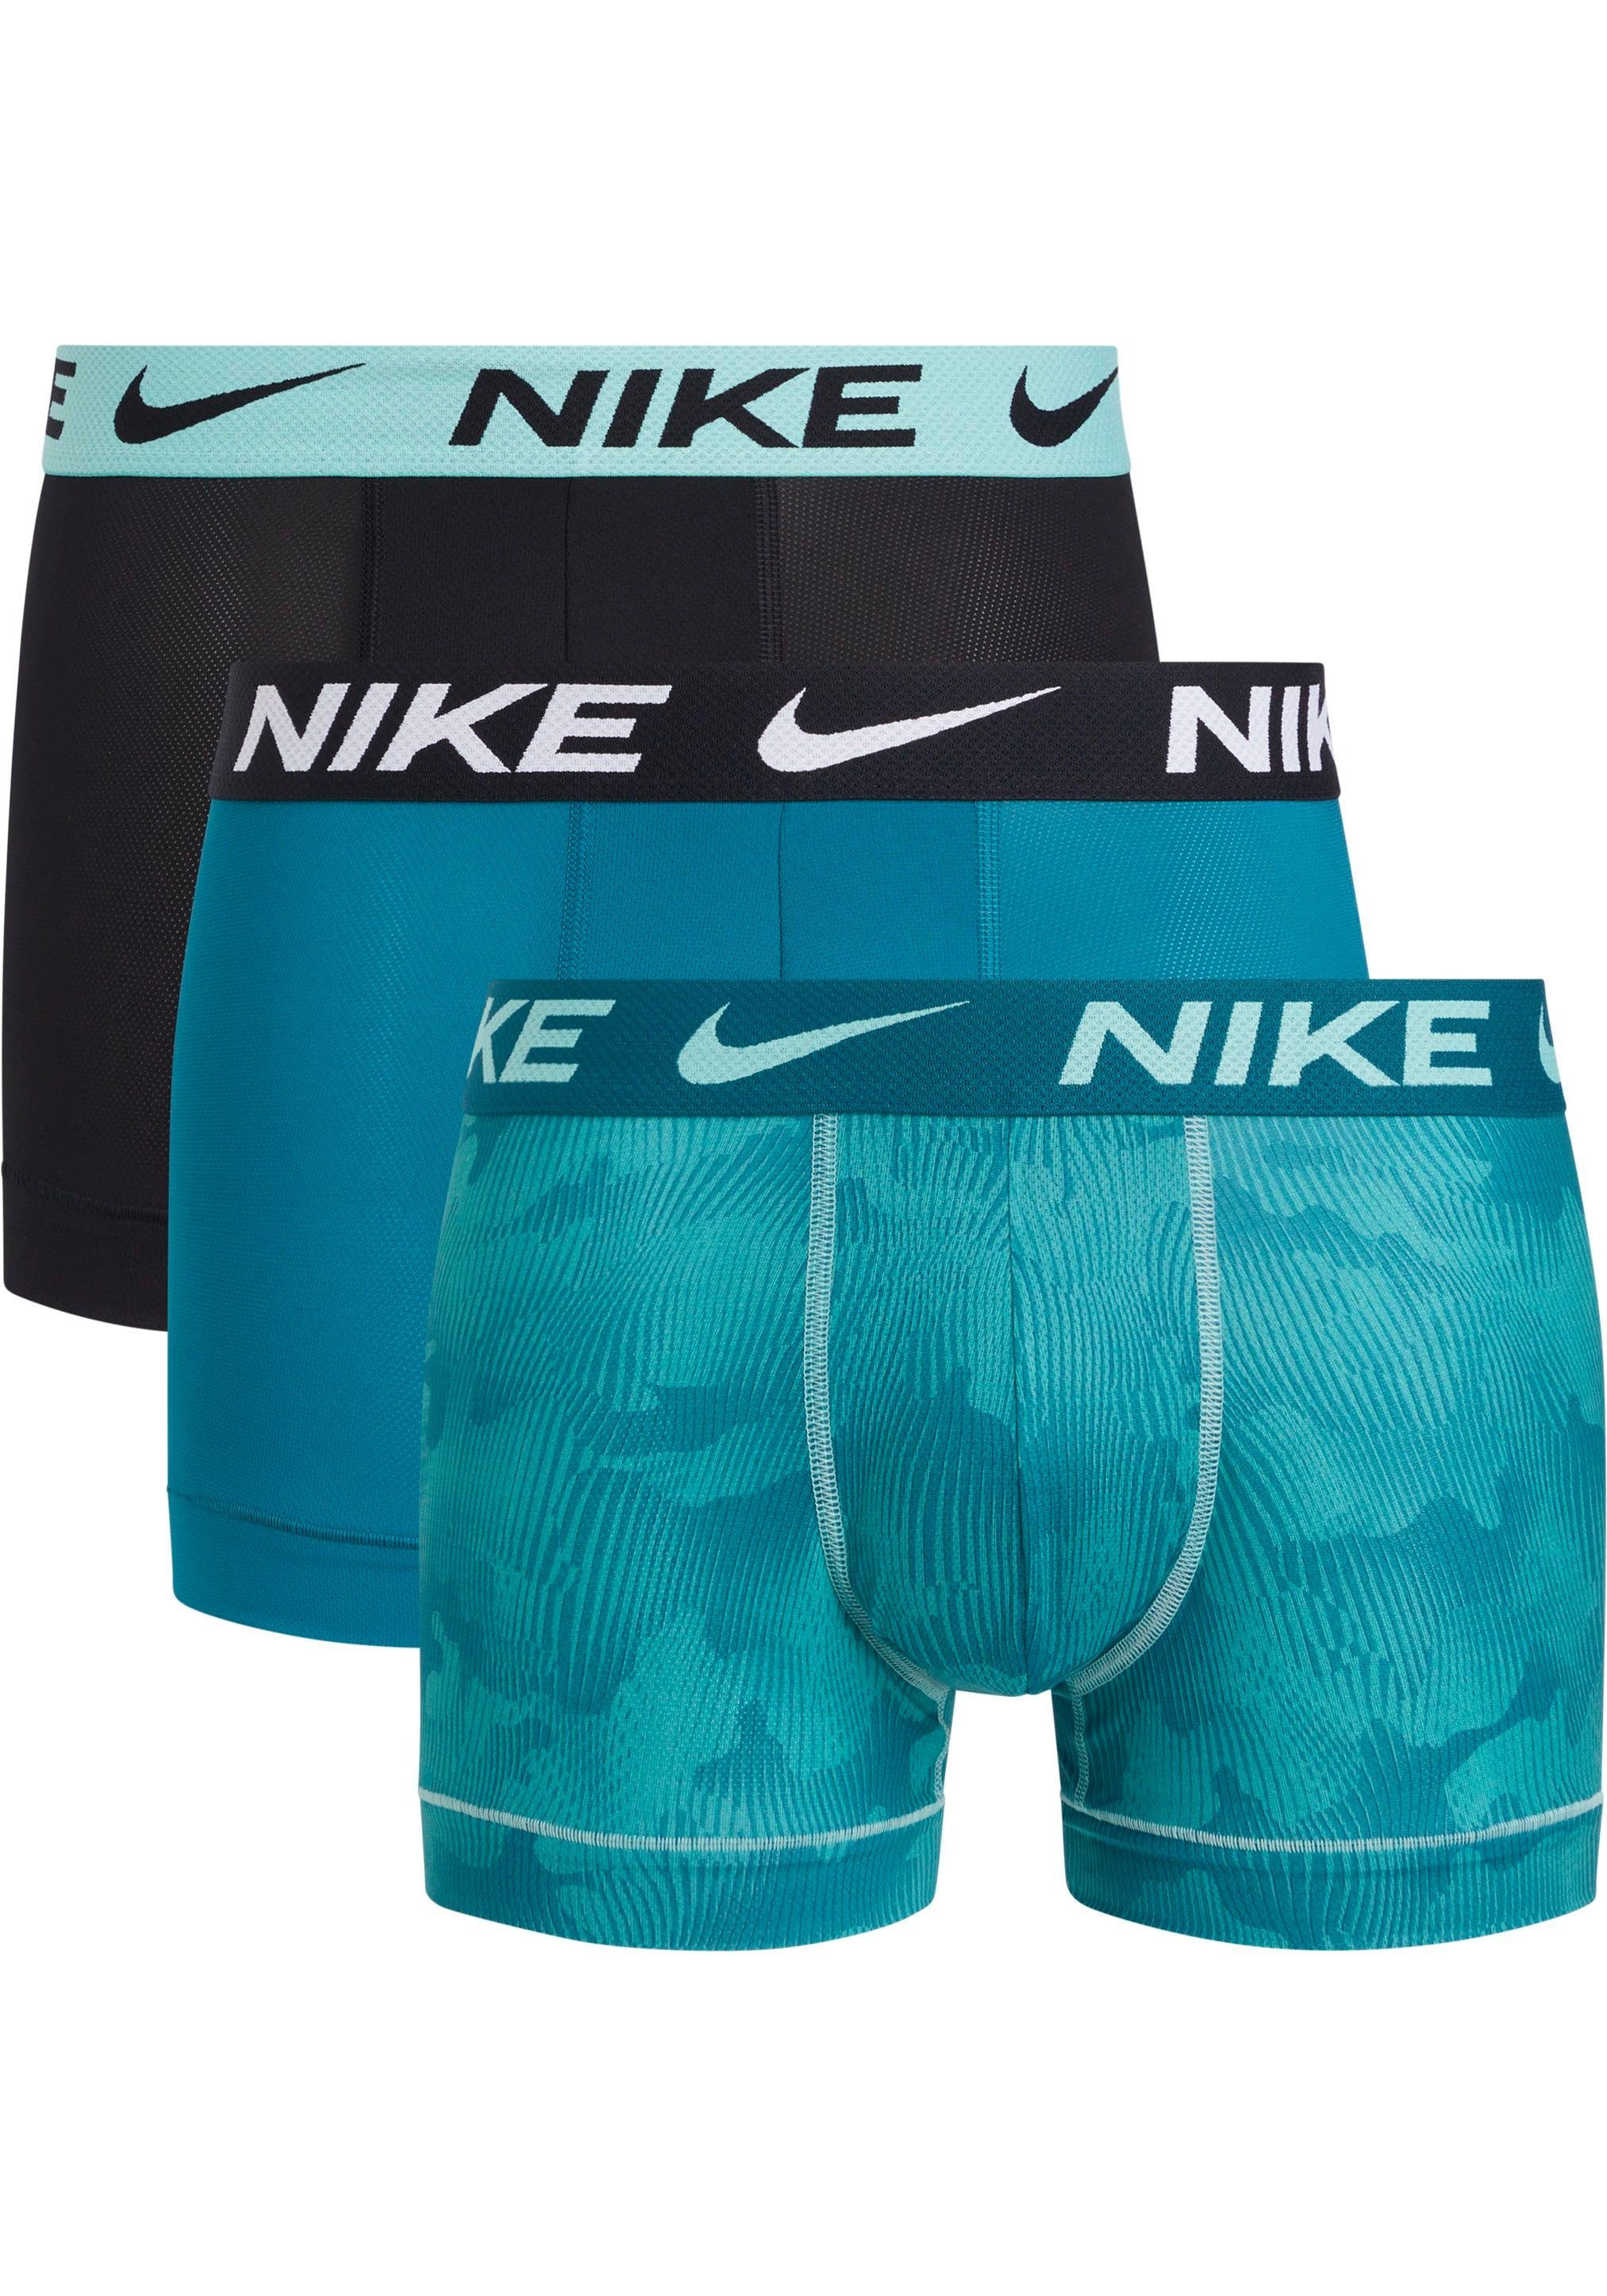 NIKE Underwear 3PK NIKE Trunk mit Stück) TRUNK (Packung, (3 3er-Pack) tuerkisblauschwarz Logo-Elastikbund